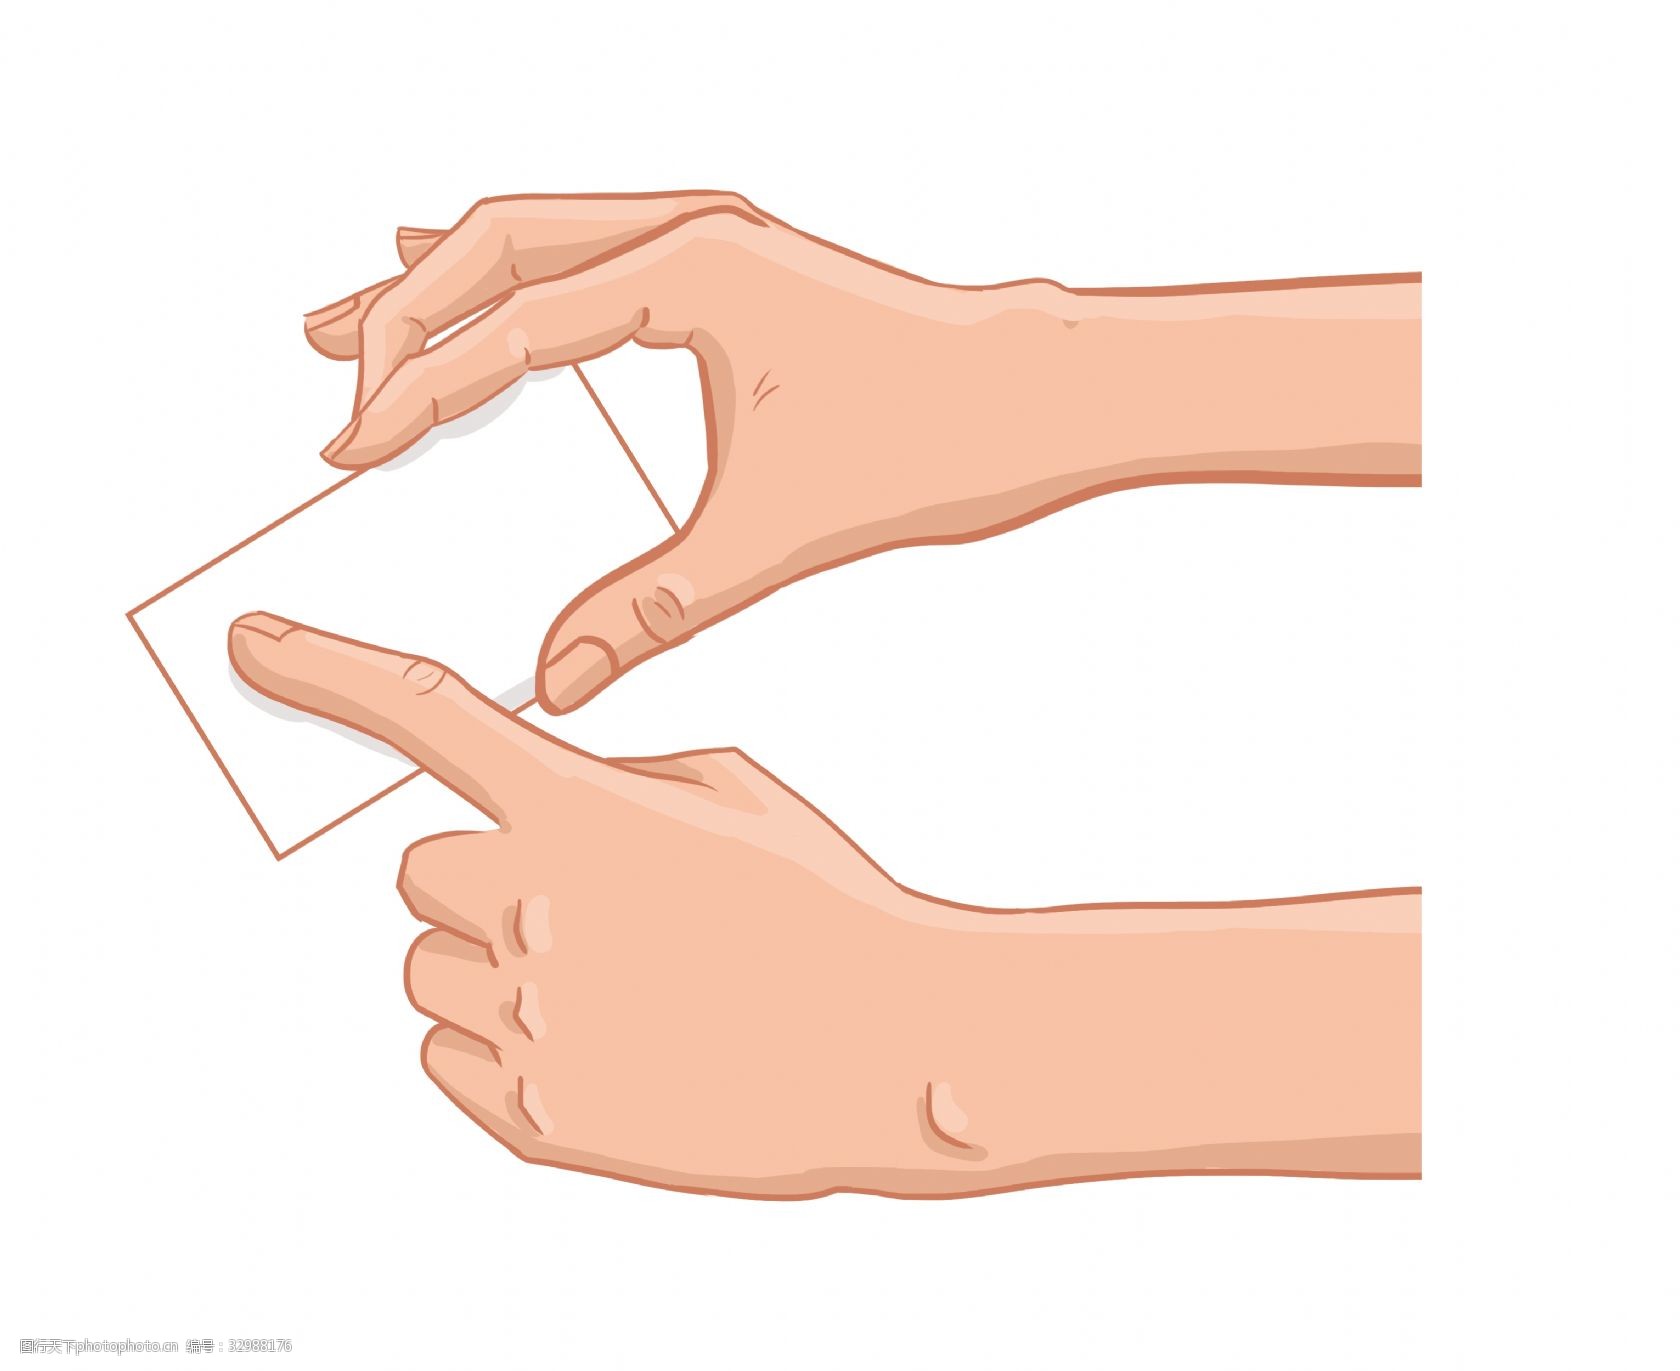 卡通手指纸片插图 简约的手势 手指纸片 白色纸片 学习用品 可爱贴士